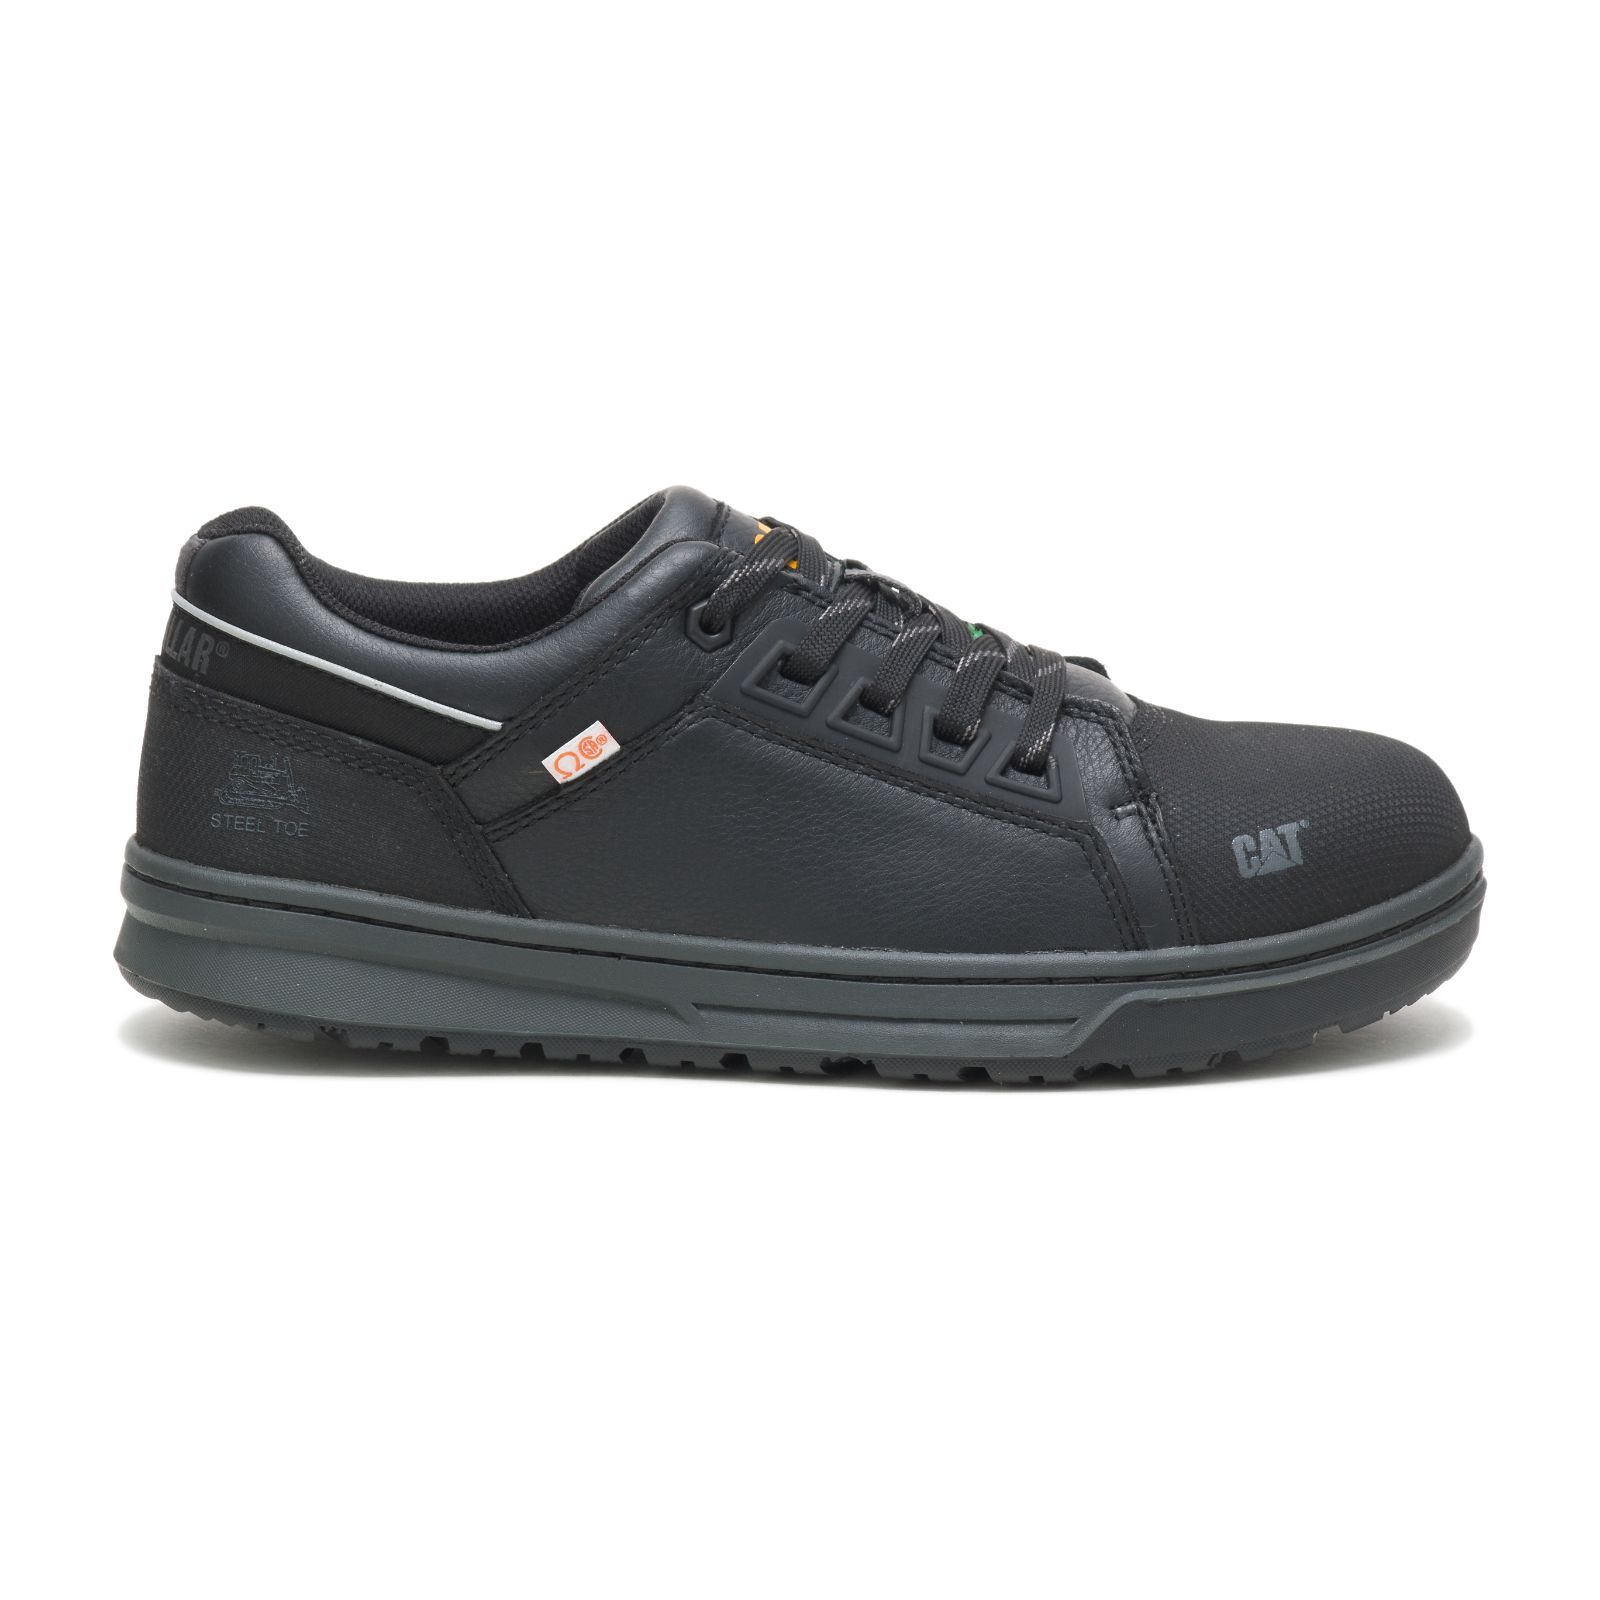 Caterpillar Concave Lo Steel Toe Csa Philippines - Mens Work Shoes - Black 23516OCAT